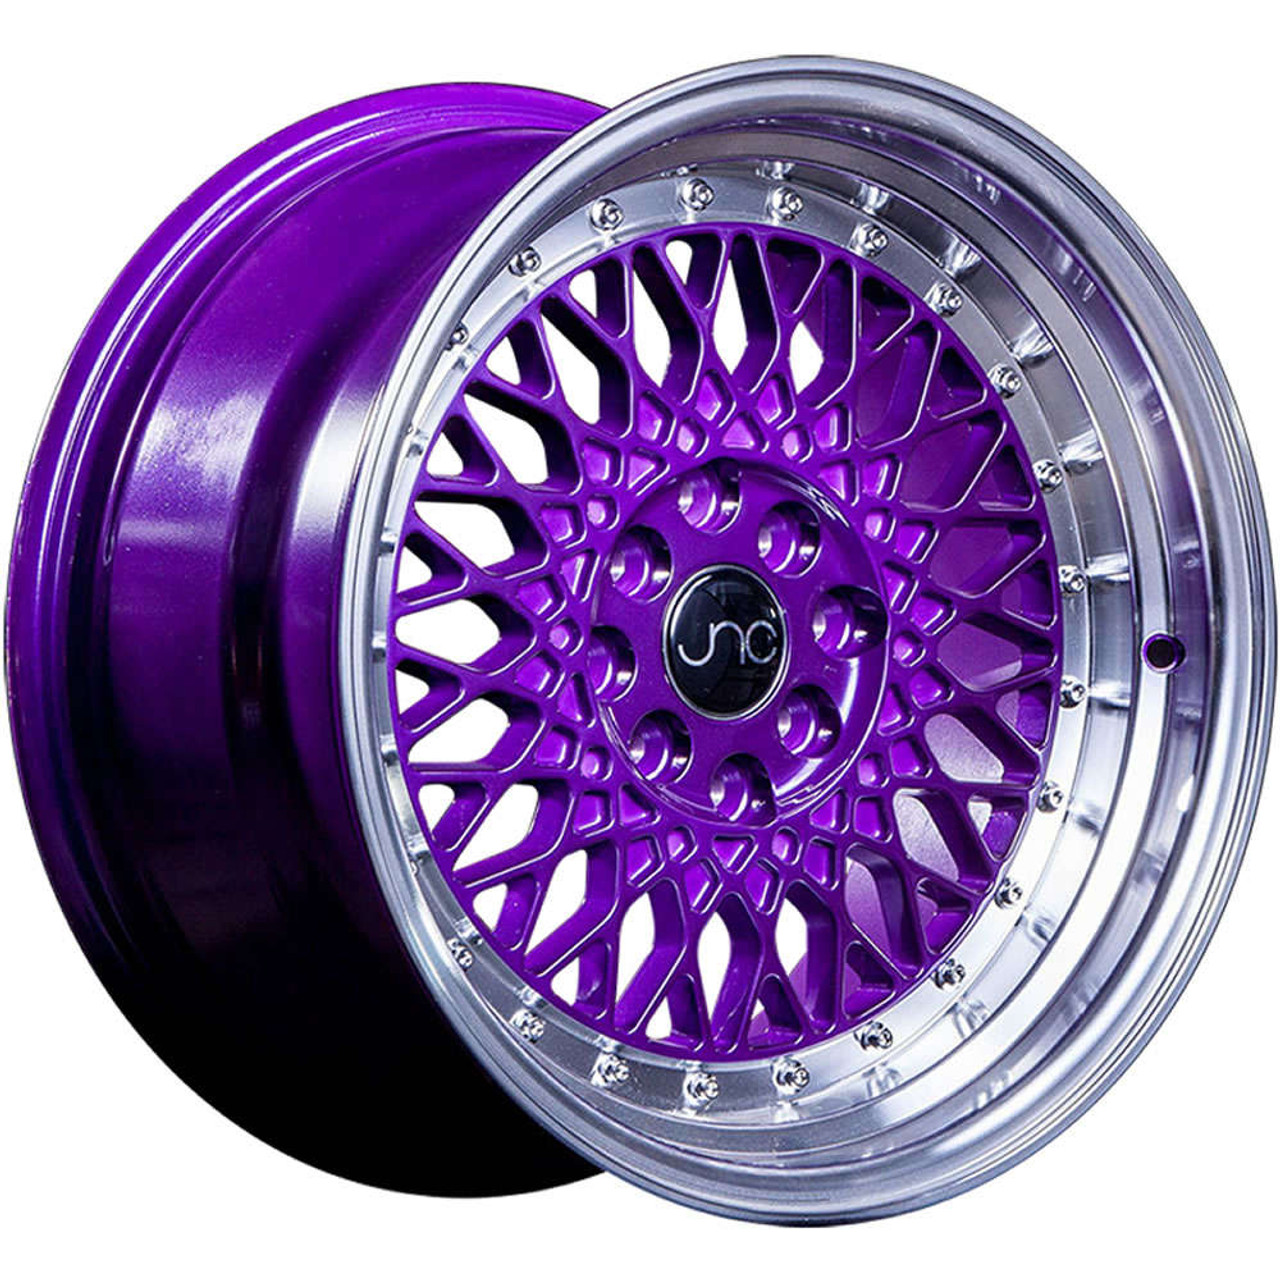 Jnc Jnc031 Wheels Rims 15x8 4x100 4x45 4x1143 Candy Purple Machined Lip 20 18515526342 